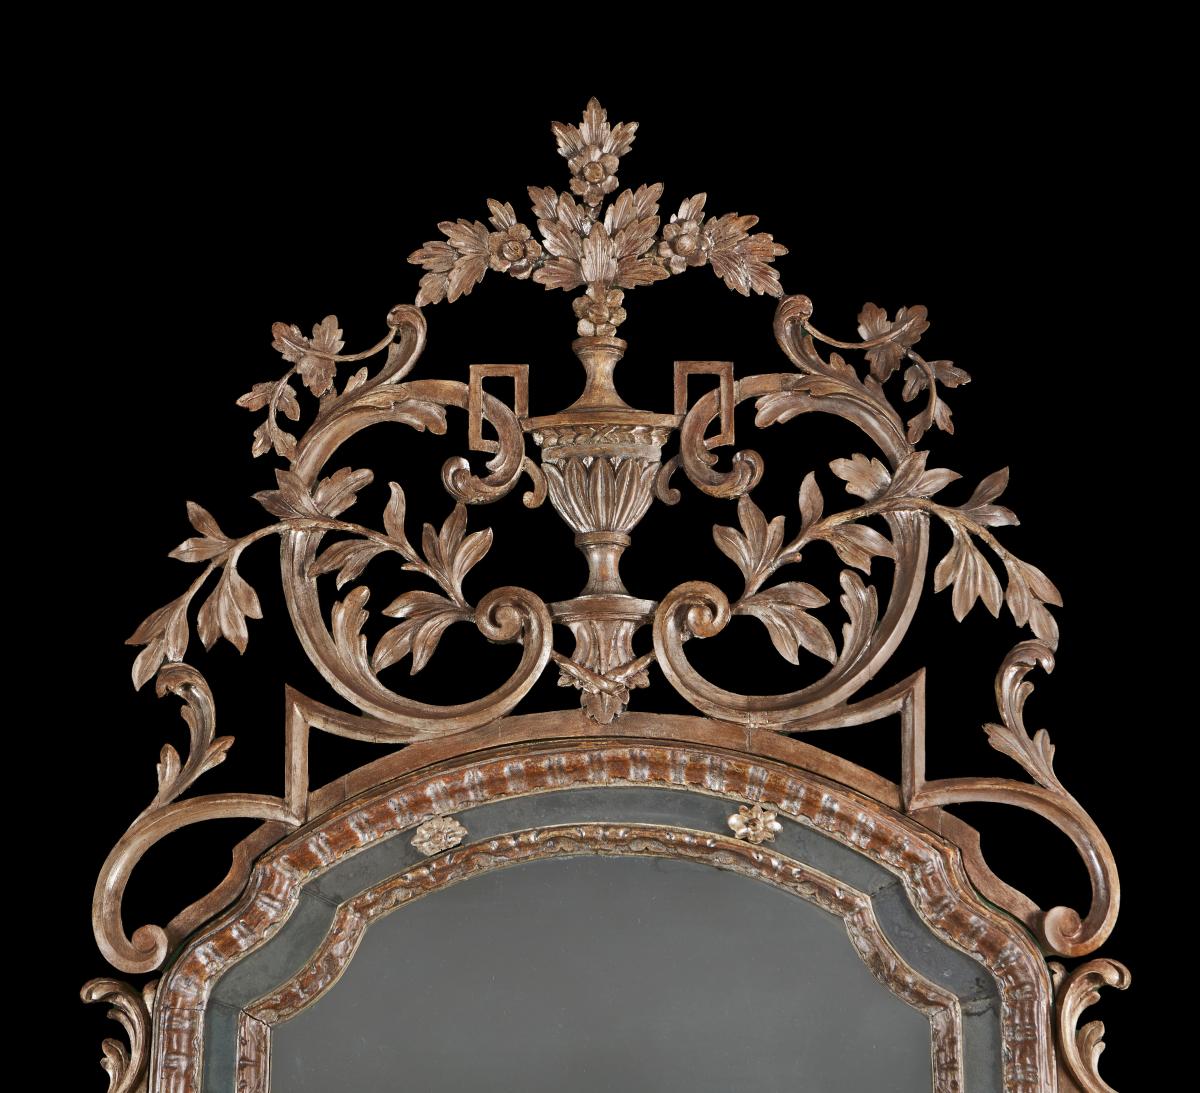 An Exceptional 18th Century Silver Gilt Rococo Pier Mirror